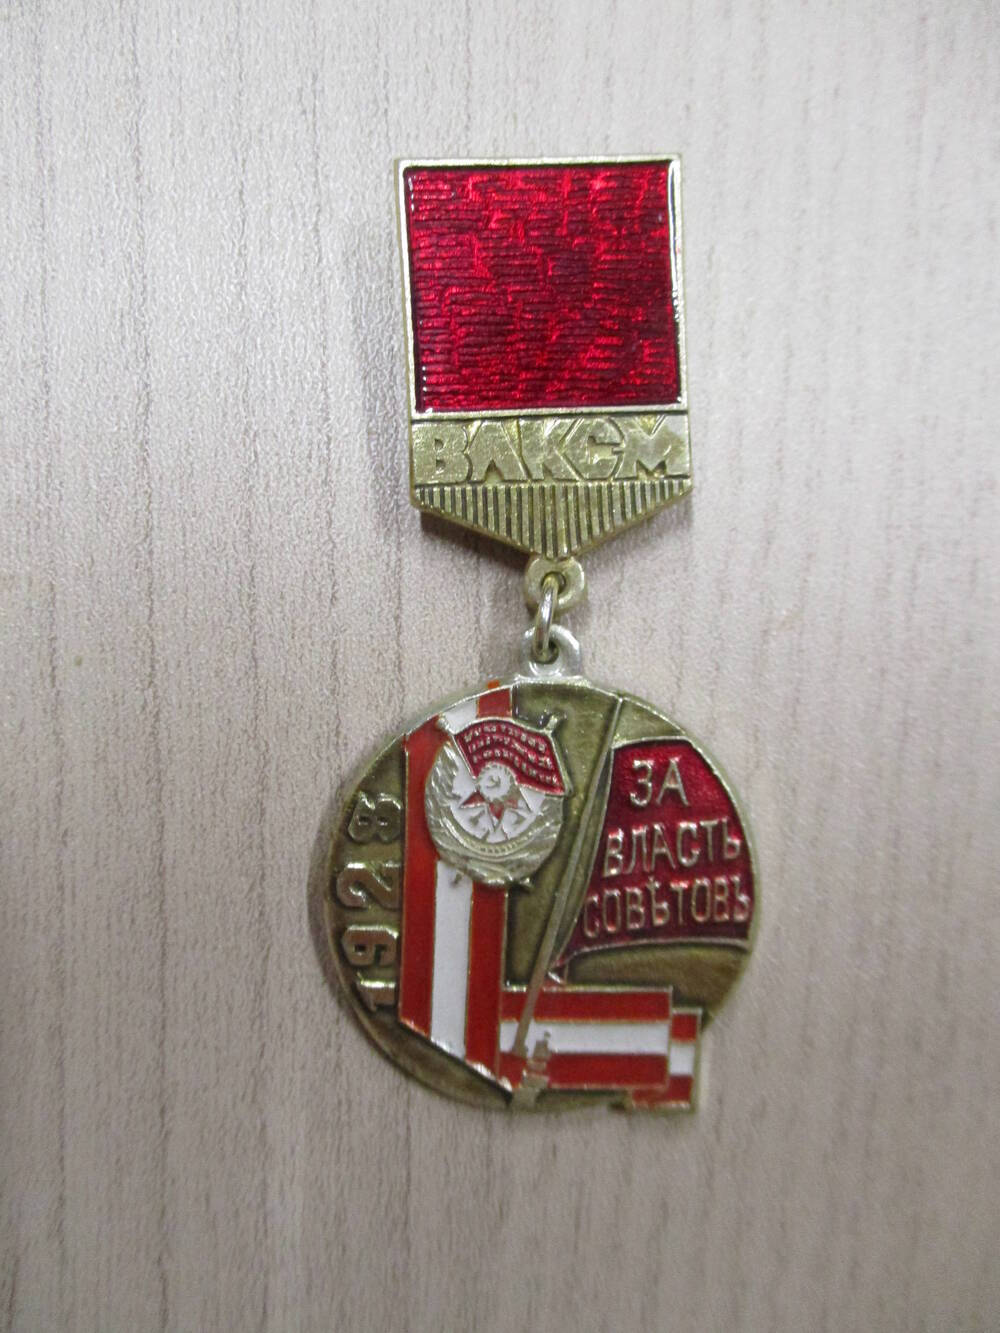 Знак 40- летия ВЛКСМ   1928. За власть советовъ  ВЛКСМ